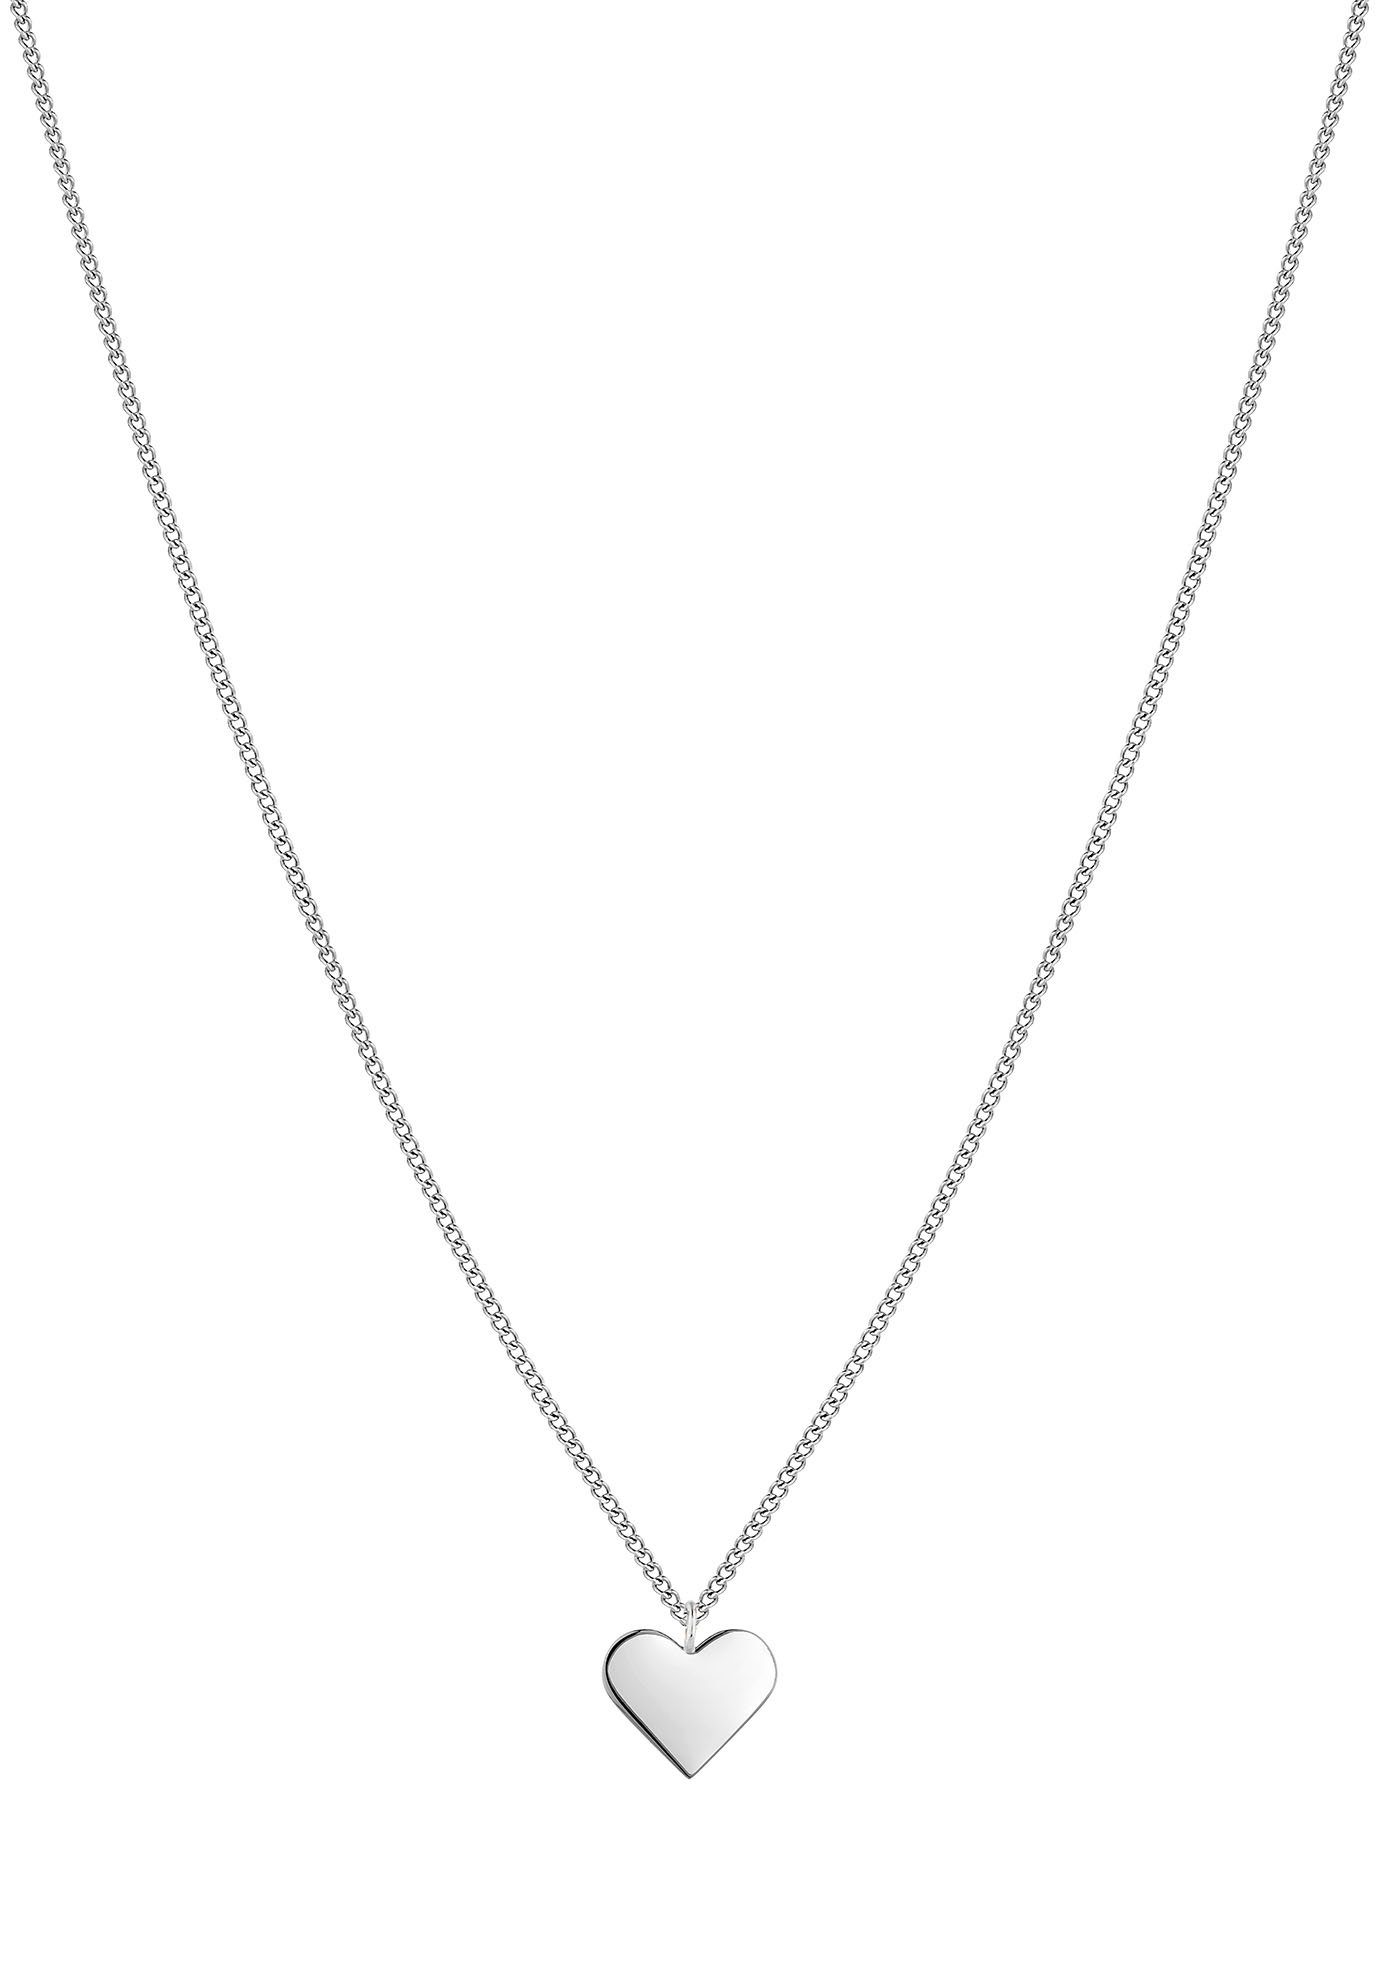 tamaris ketting met hanger hart, tj-0025-n-45, tj-0026-n-45 zilver